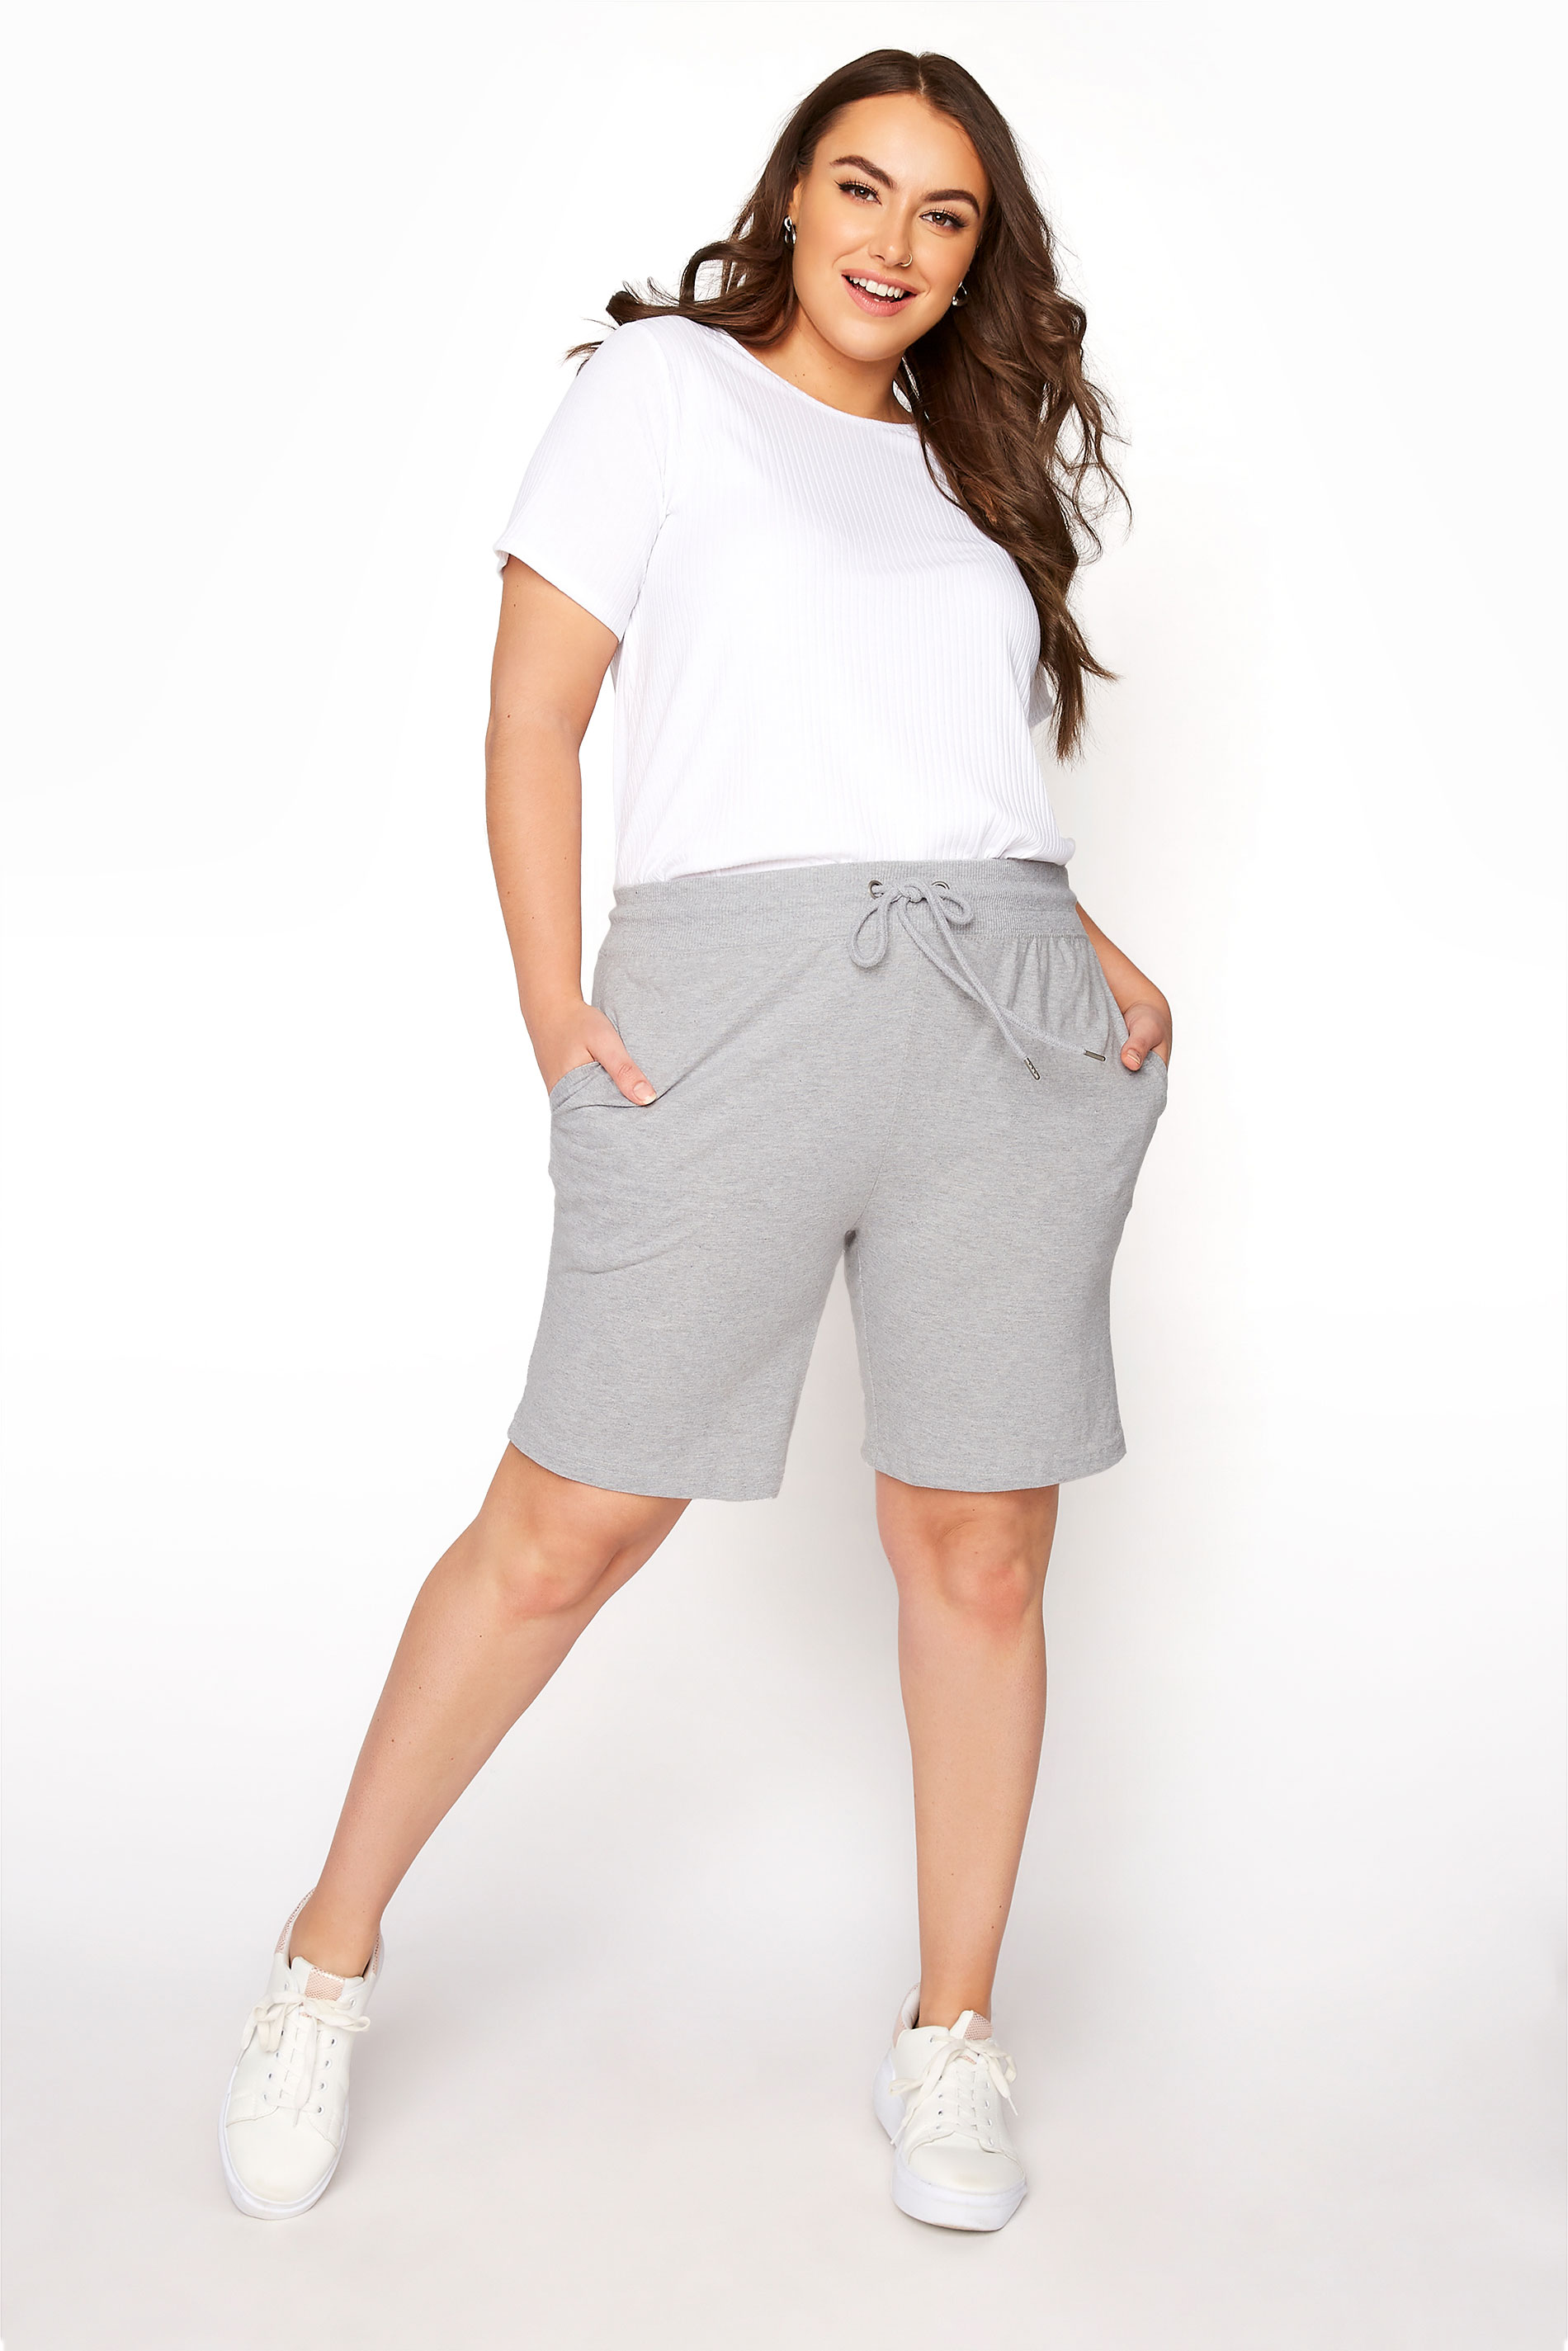 Grande taille  Shorts Grande Taille Grande taille  Shorts à la mode | Short Gris Style Jogging - CQ80325